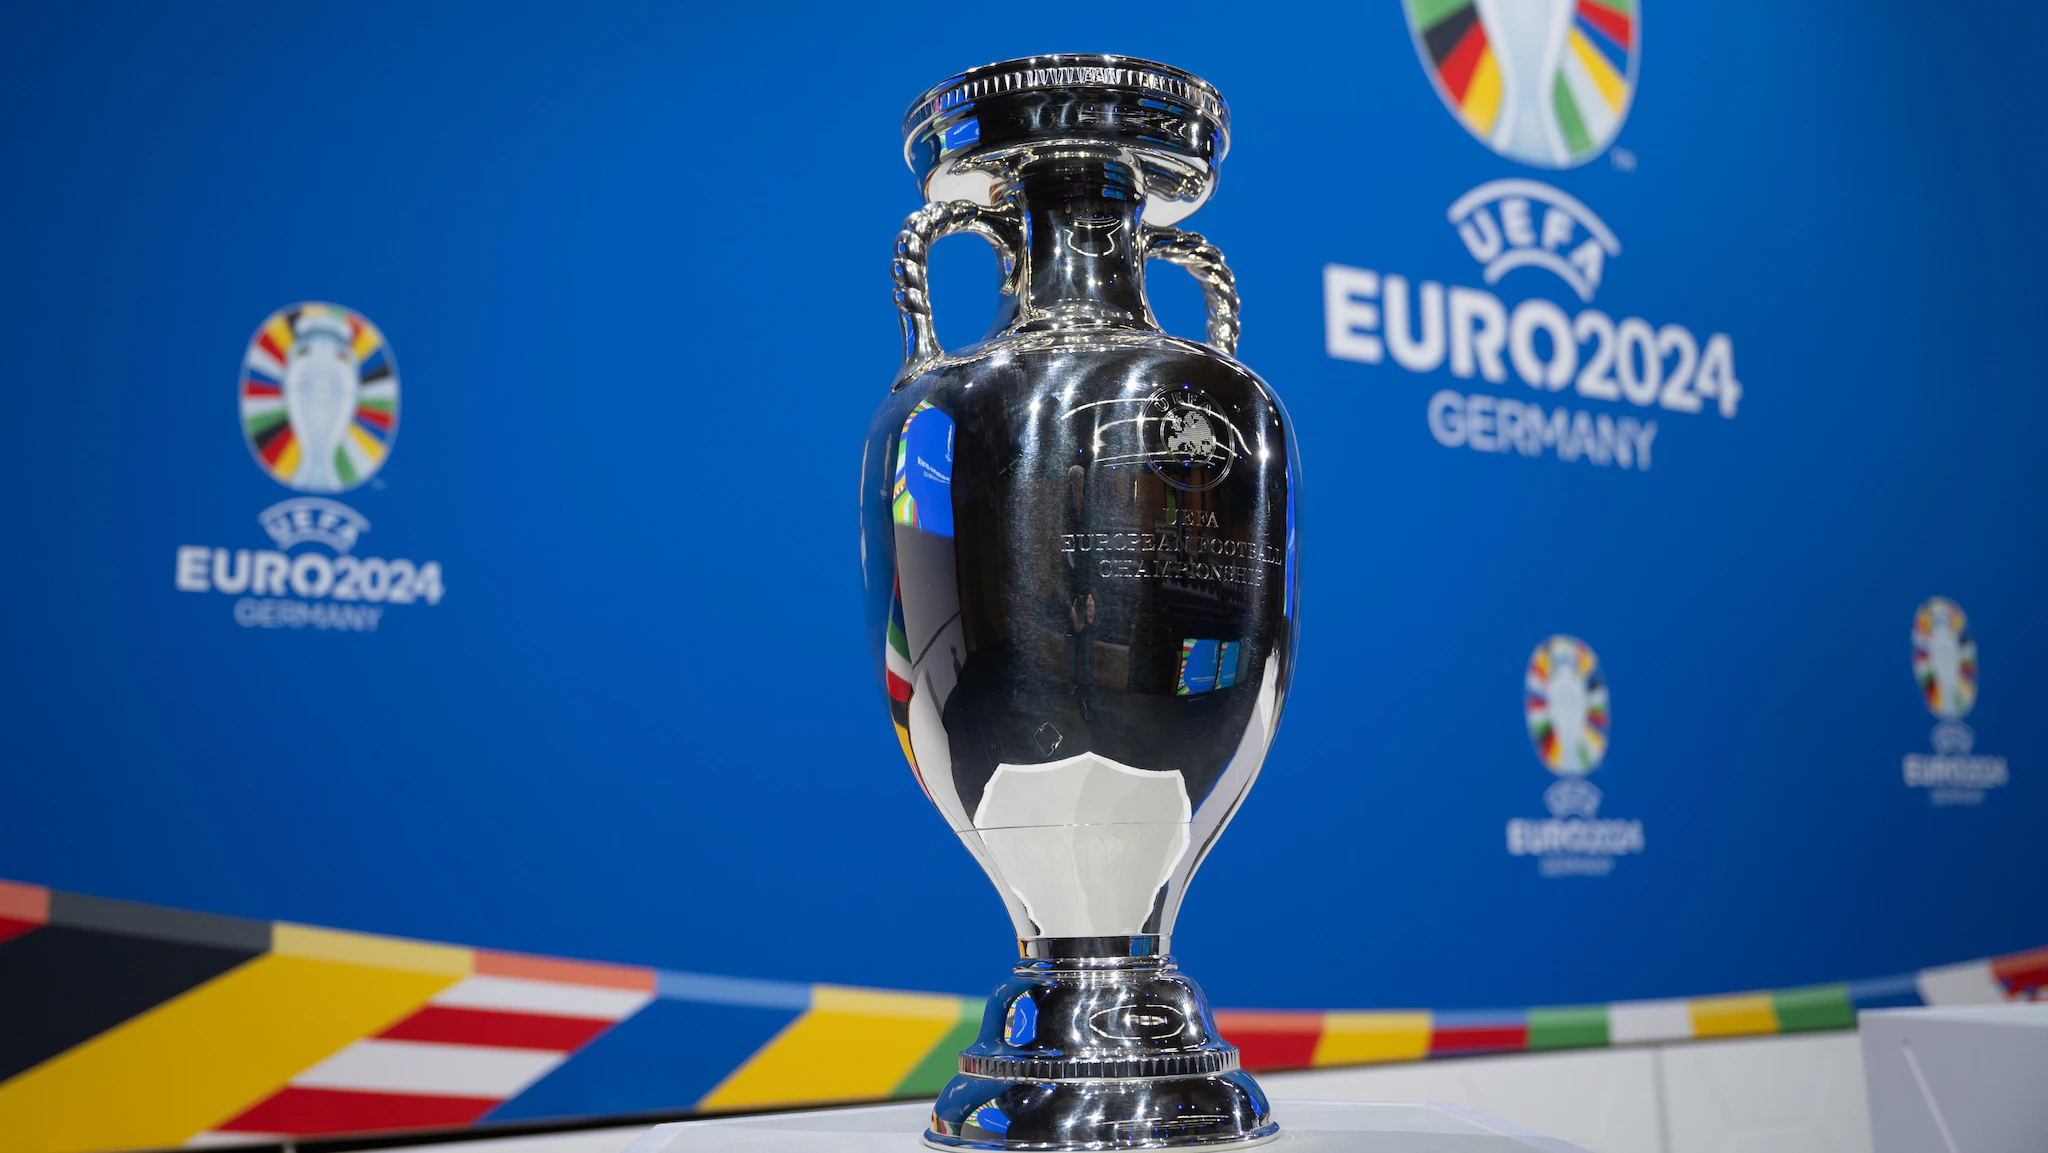 UEFA nxjerr në shitje bileta të tjera për Evropianin e Gjermanisë. Mundësi për shqiptarët, por…